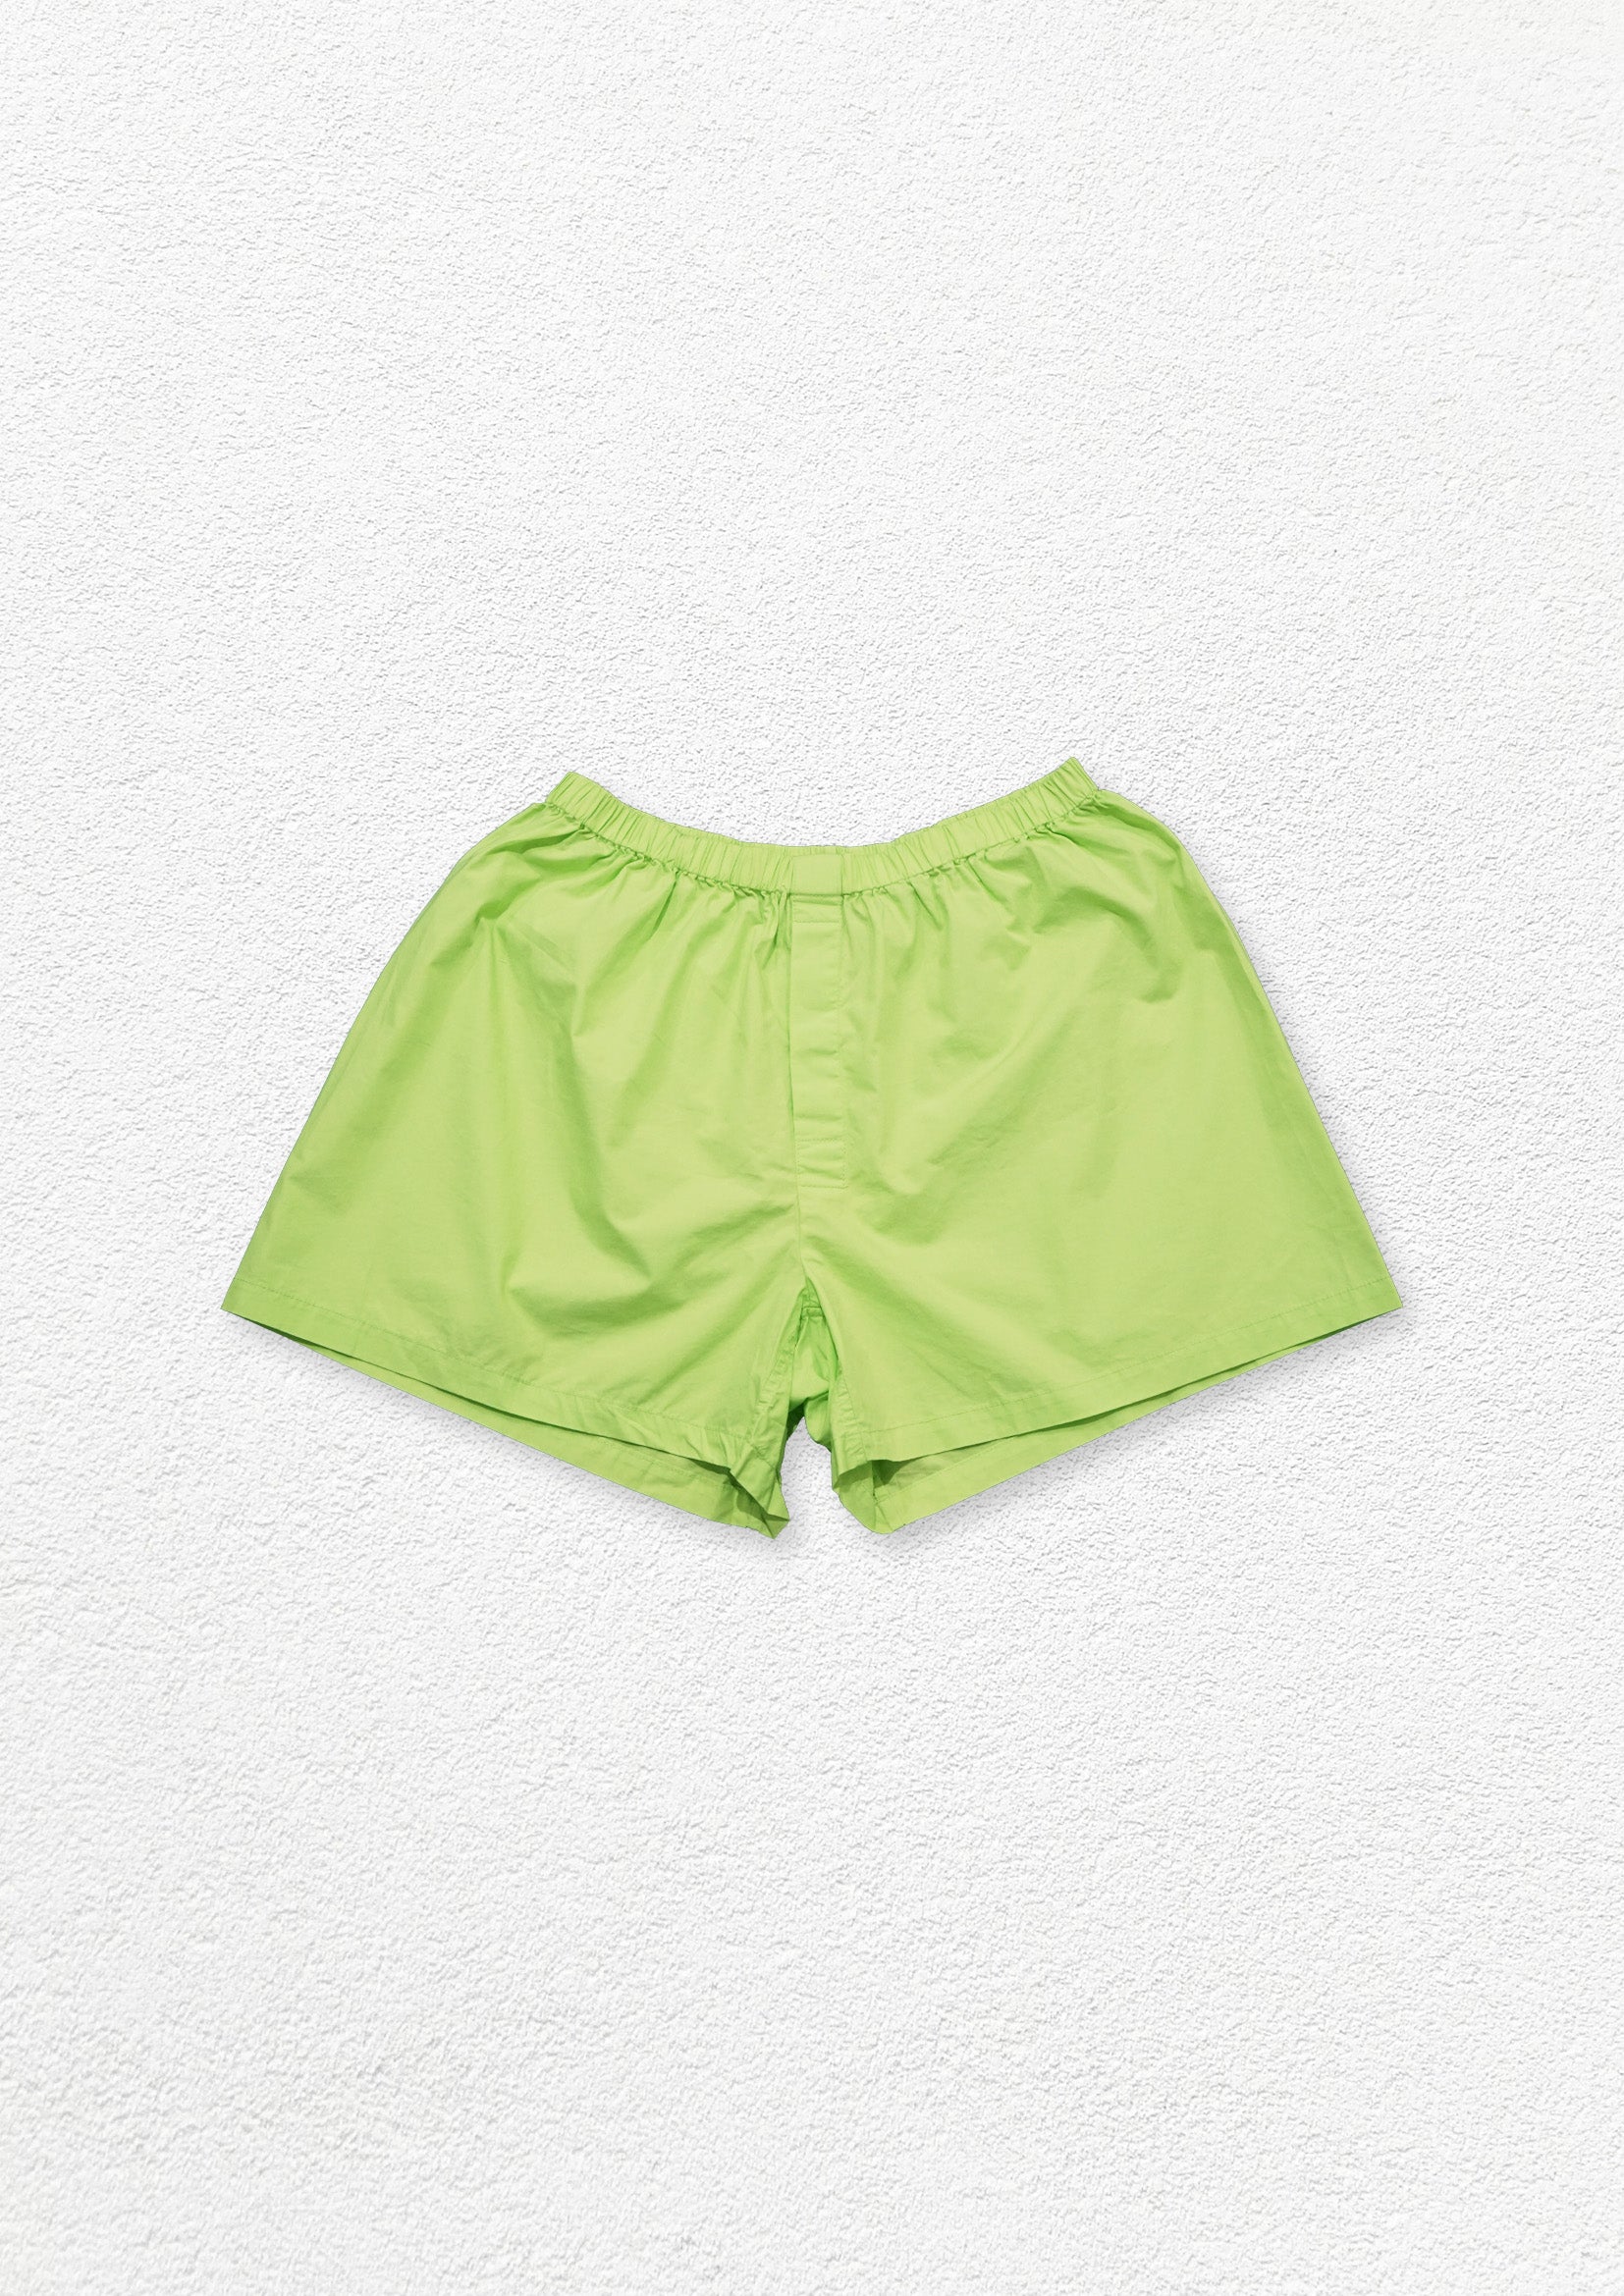 Unisex boxer shorts underwear - lawn green